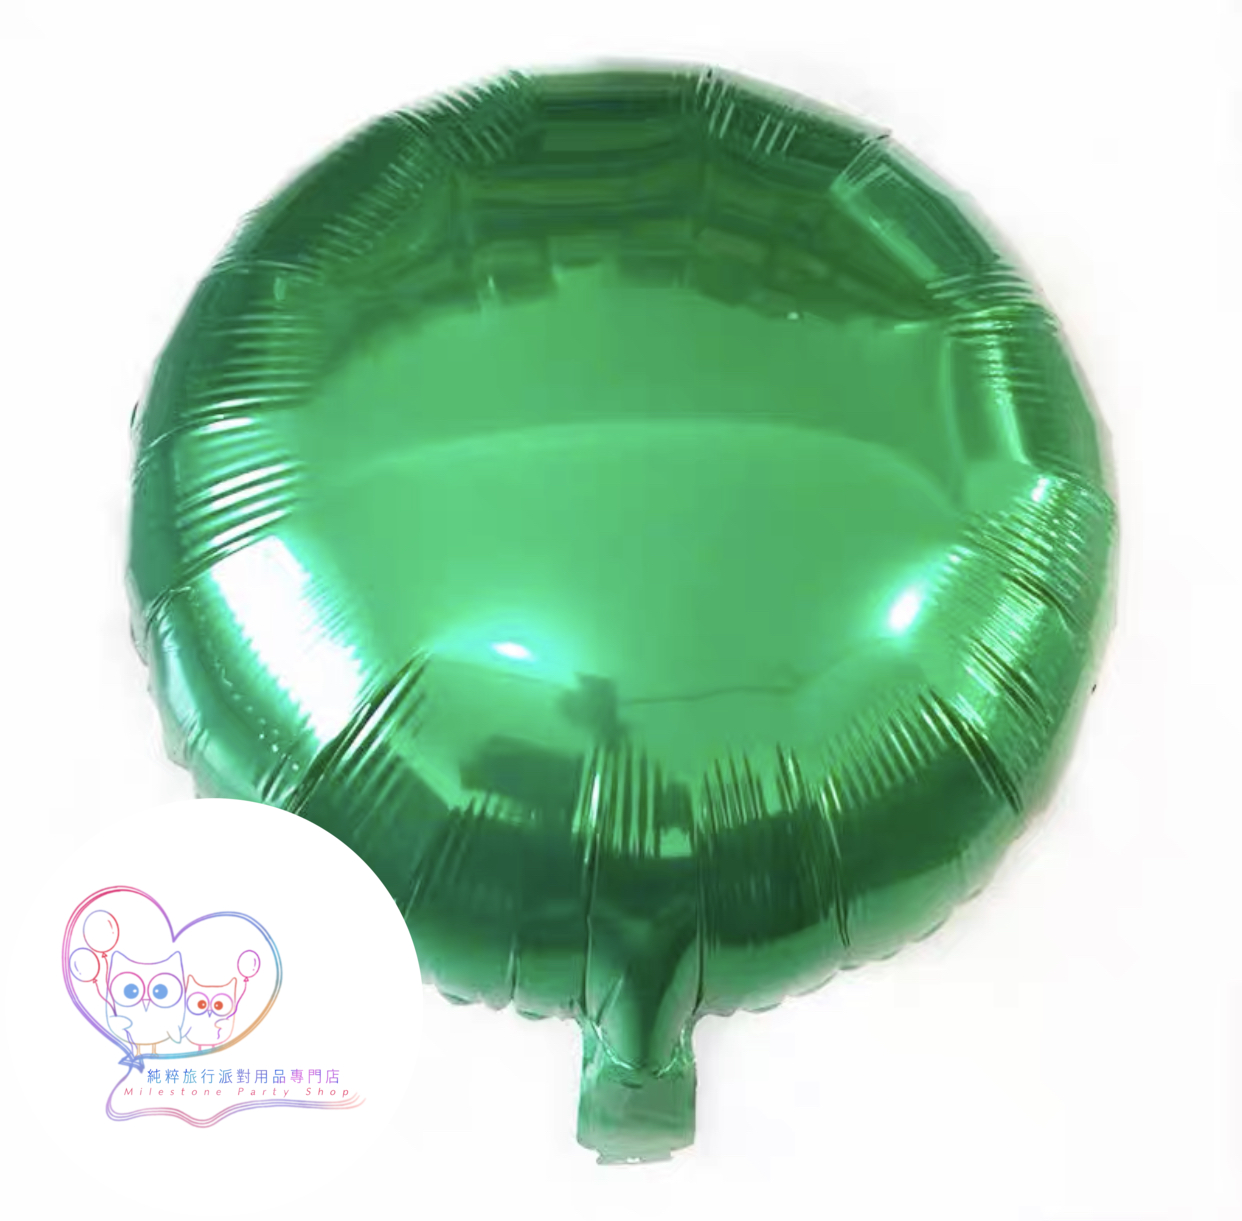 18吋圓形鋁膜氣球 (綠色) 18O5